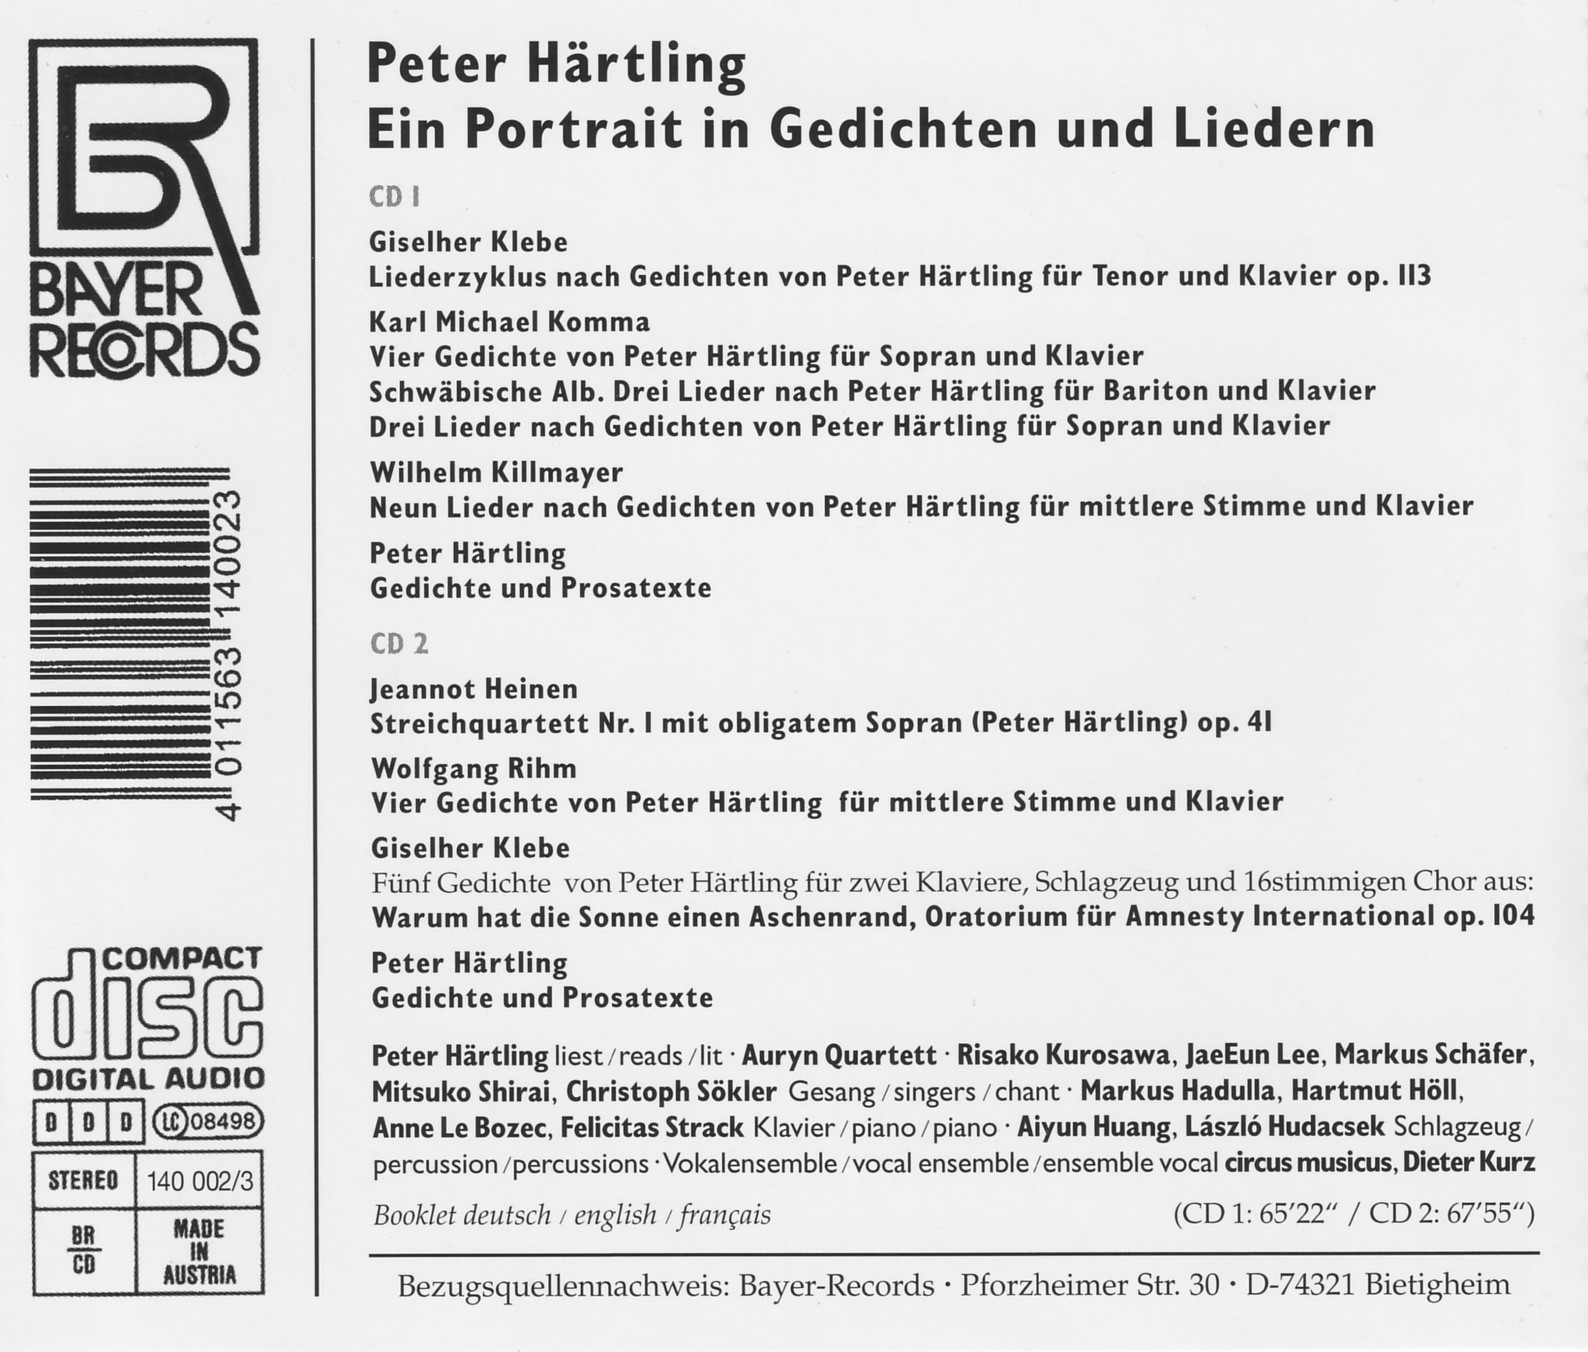 Peter Härtling - Ein Portrait in Gedichten und Liedern(zu seinem 70. Geburtstag)